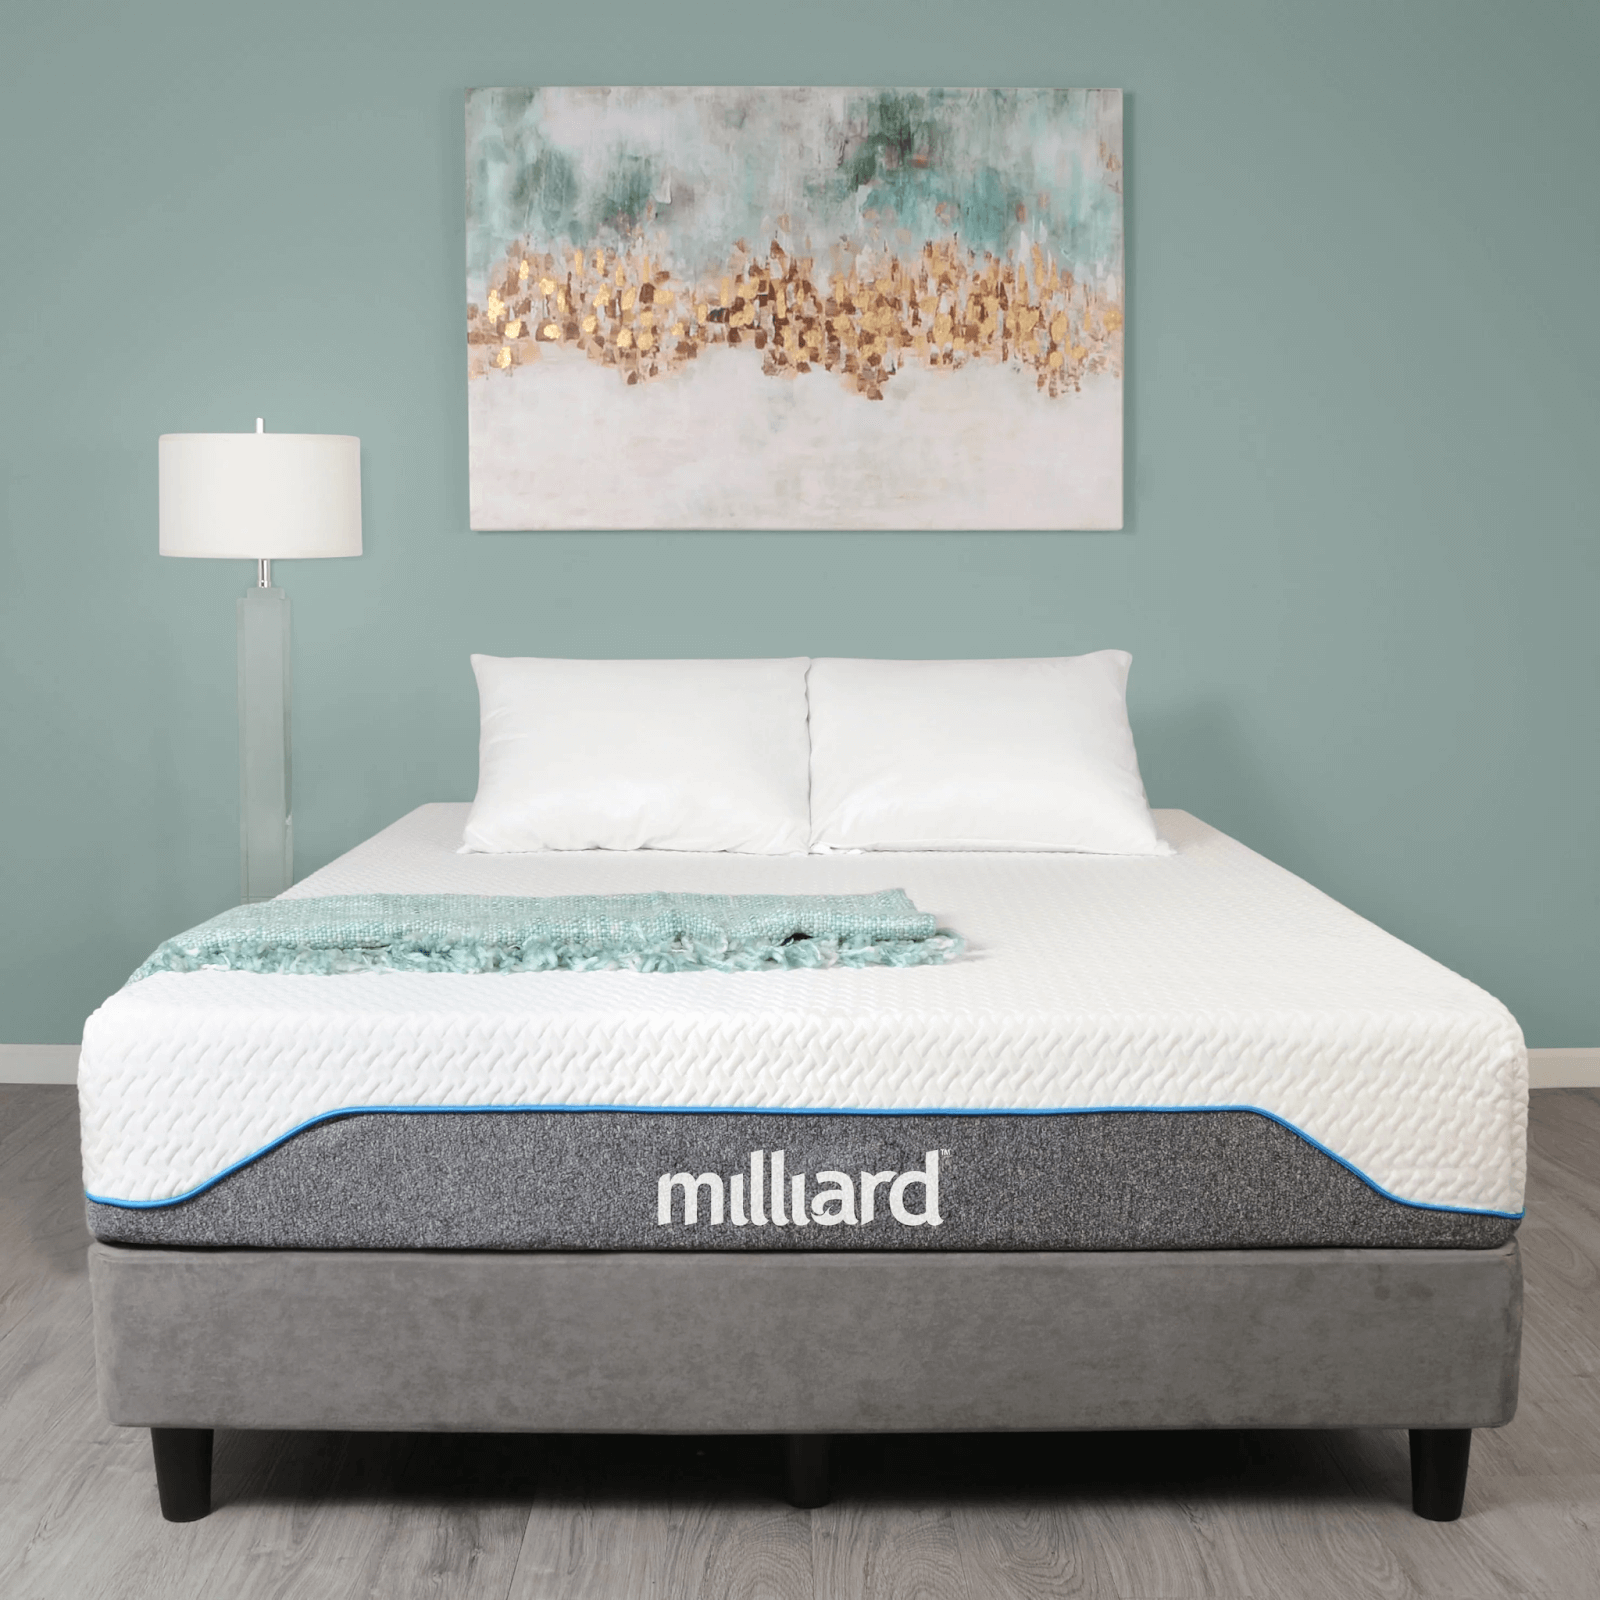 Milliard mattress.